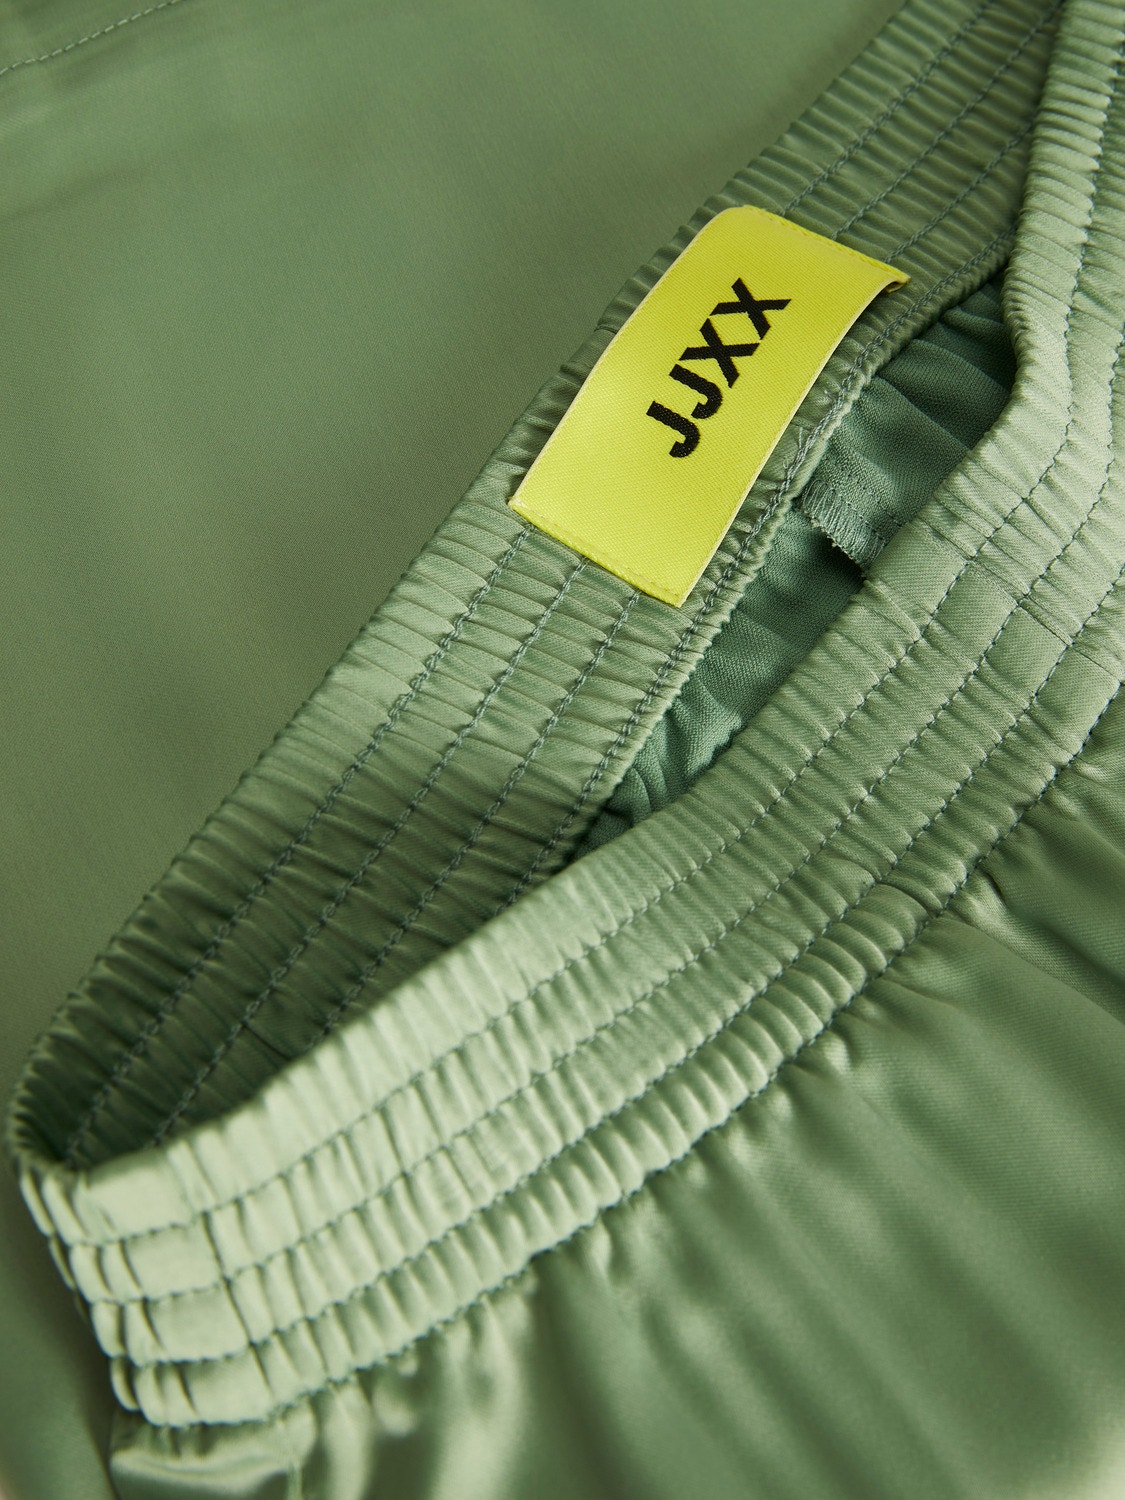 JJXX JXKIRA Klasické kalhoty -Loden Frost - 12200161